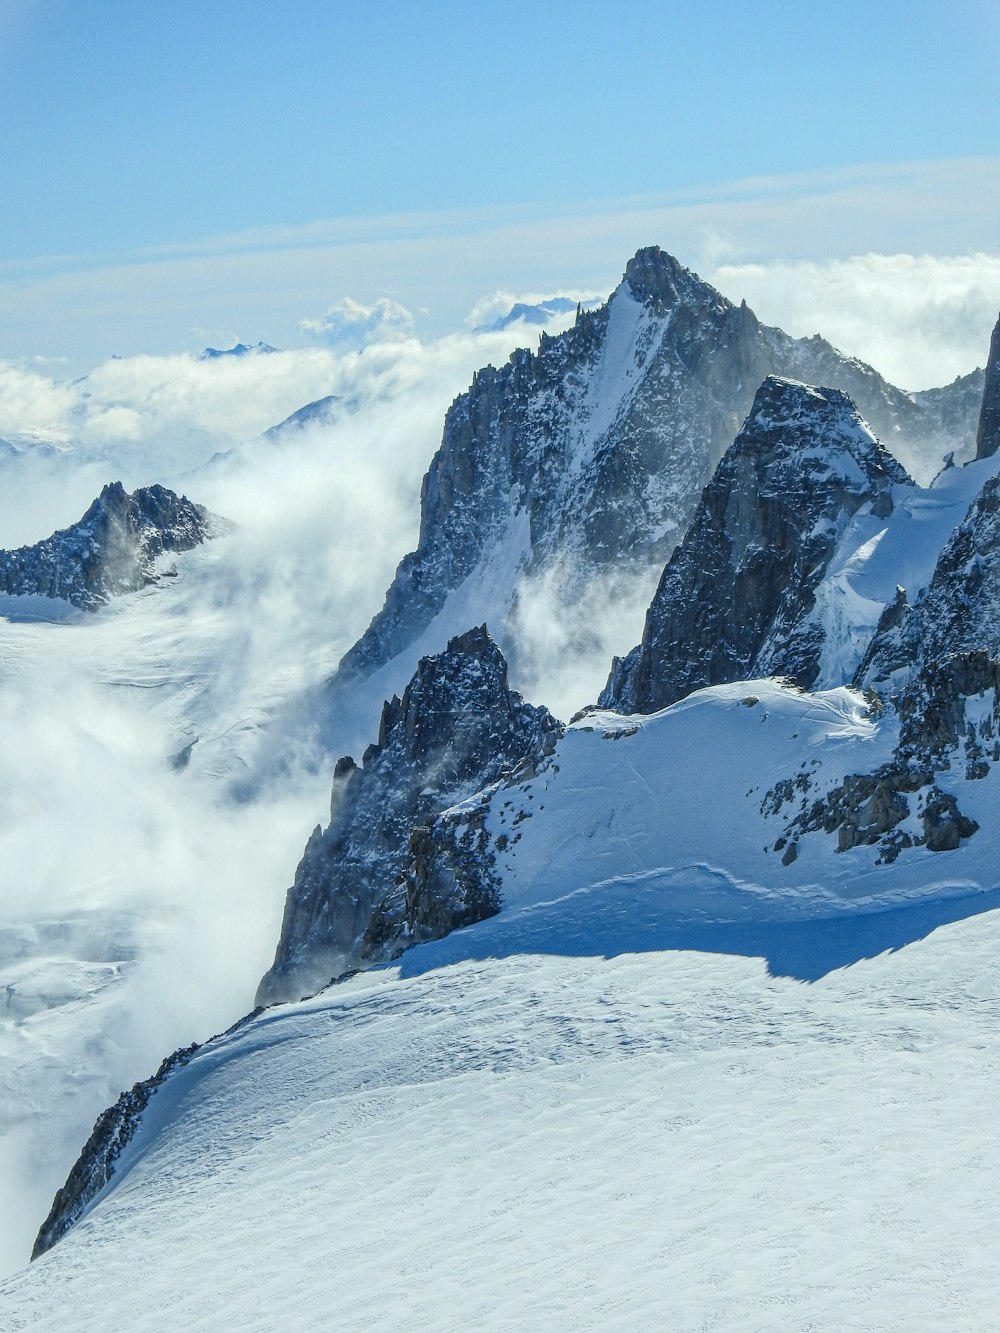 Un hombre montando esquís en la cima de una ladera cubierta de nieve